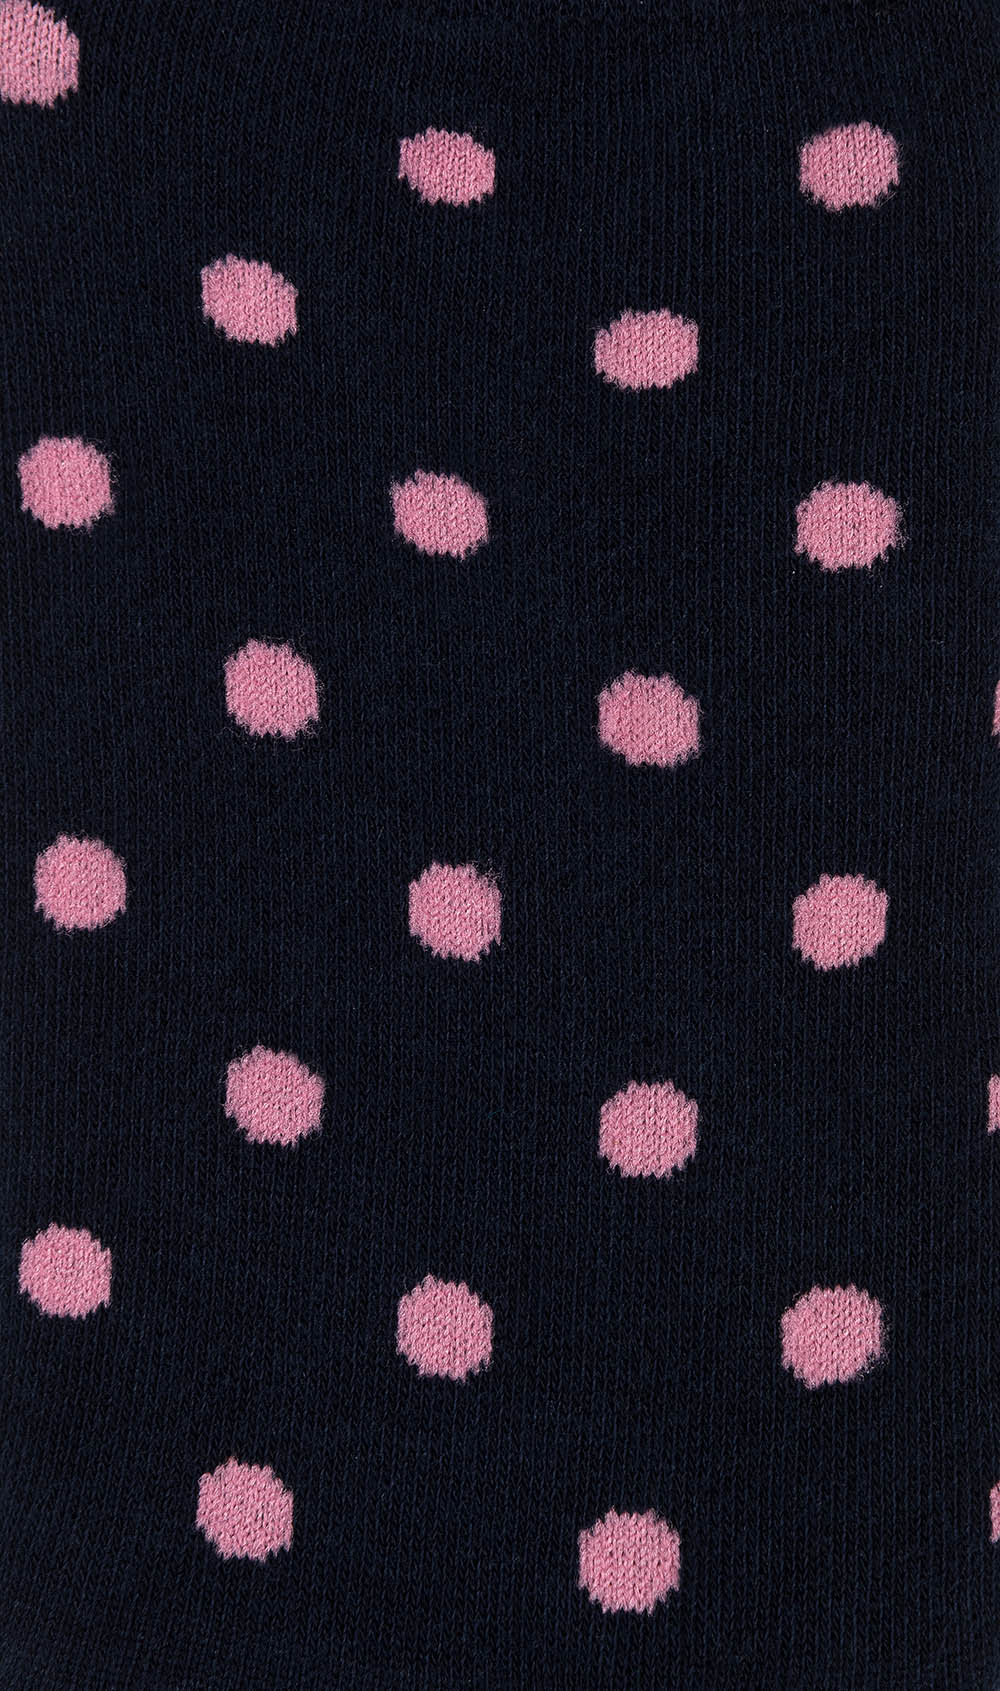 Midnight Blue On Pink Polka Dot Low Cut Socks Pattern